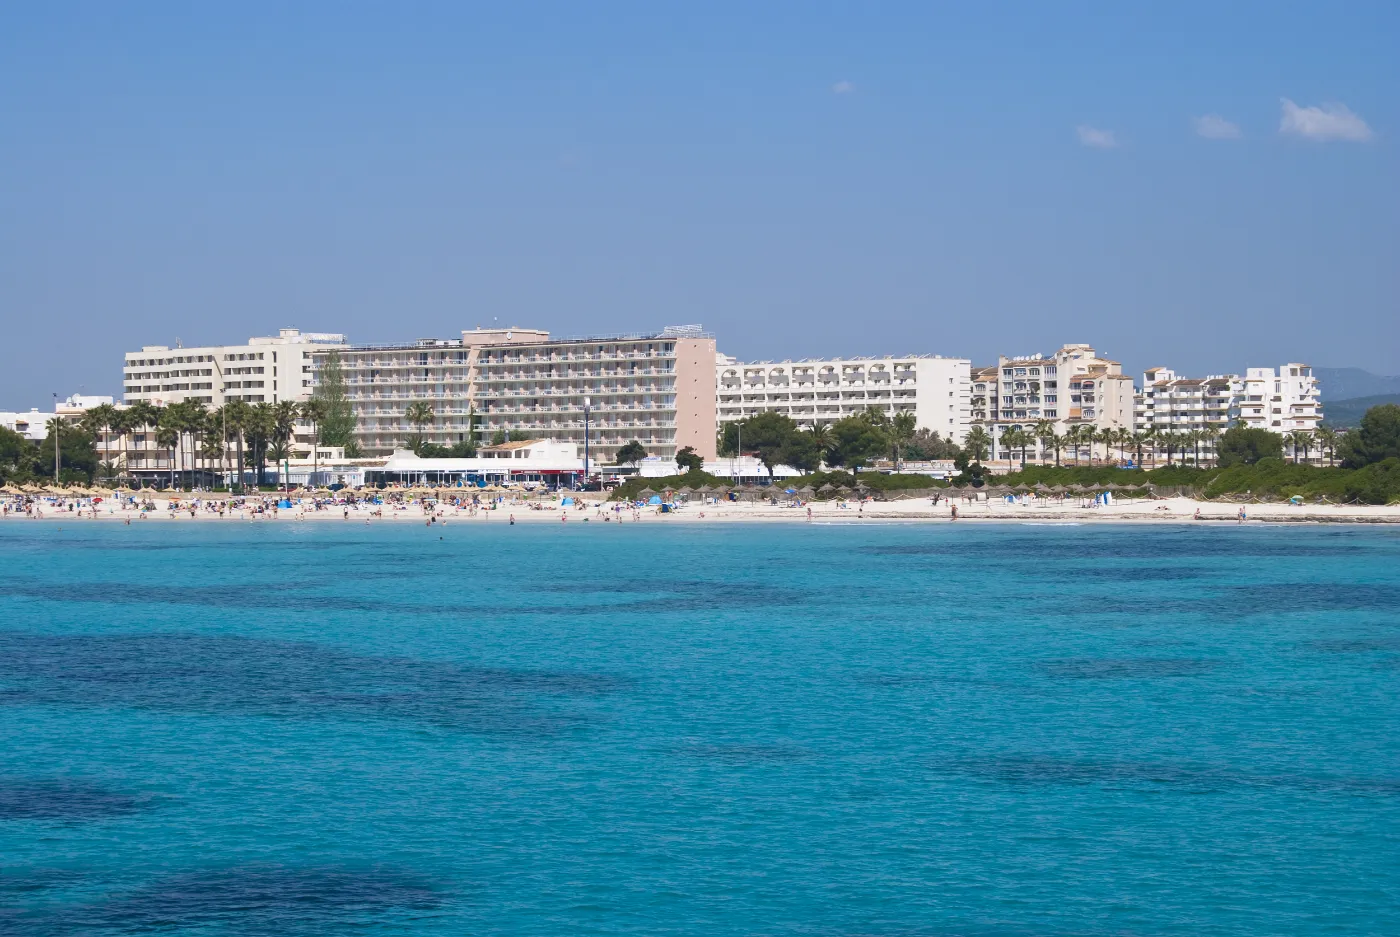 Strand med hoteller omkring i byen Sa Coma på ferieøen Mallorca i Spanien.